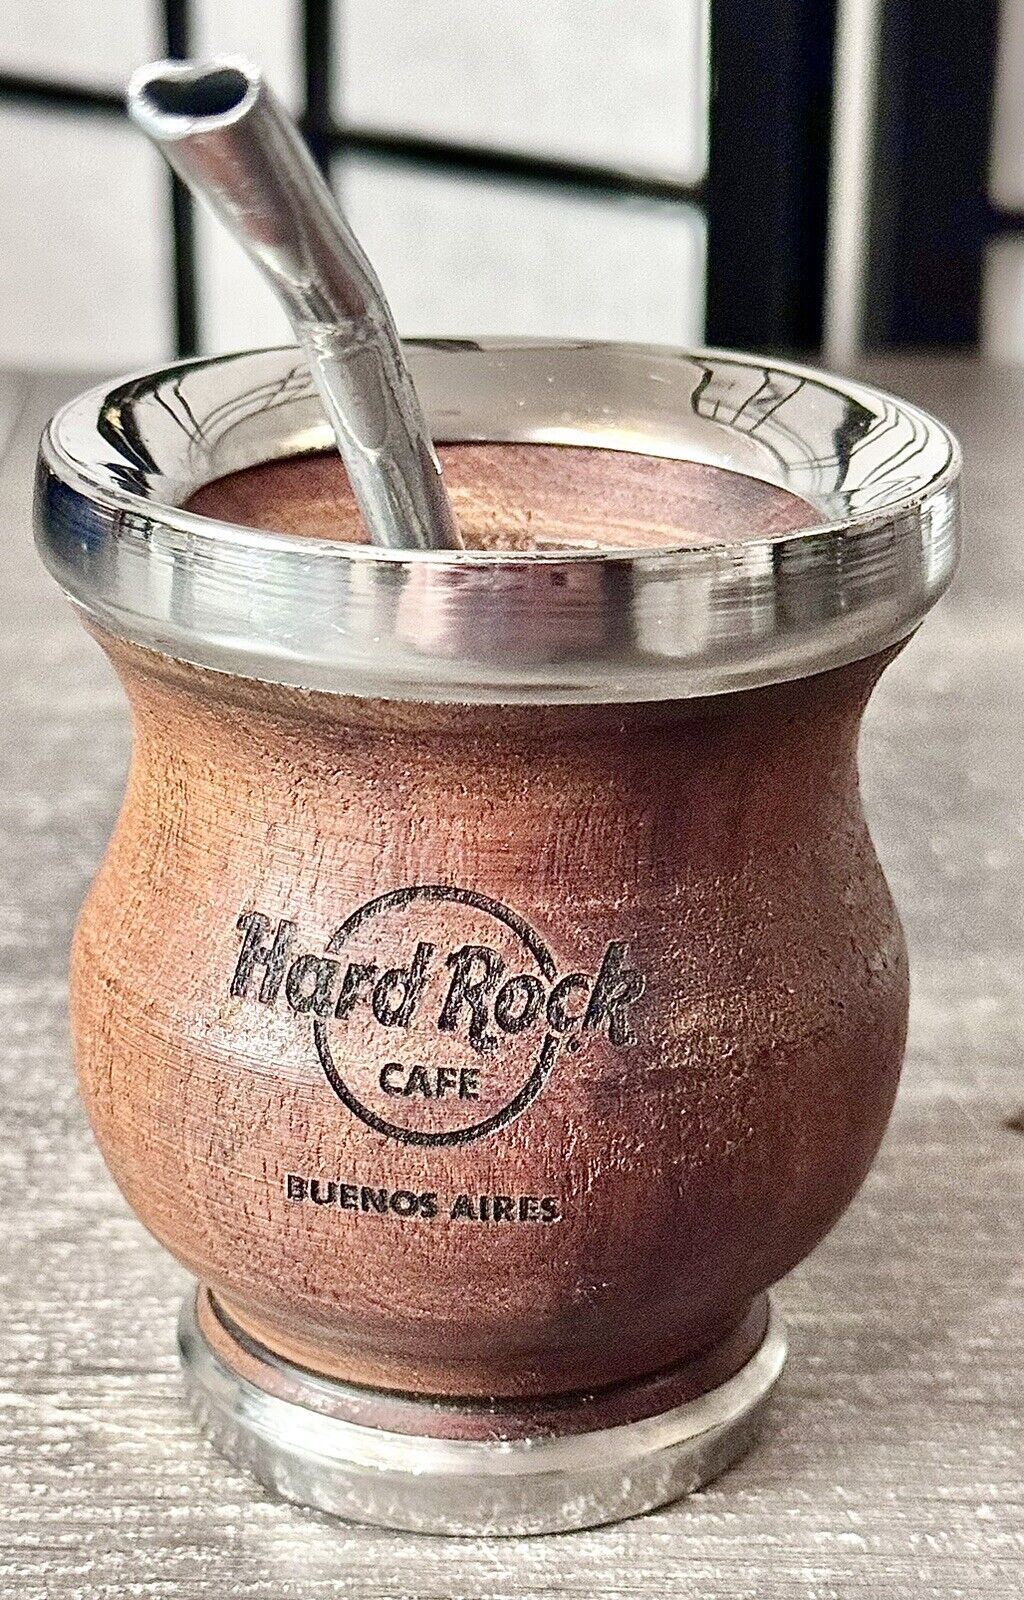 Hard rock Café Buenos Aires mate gourd bombilla